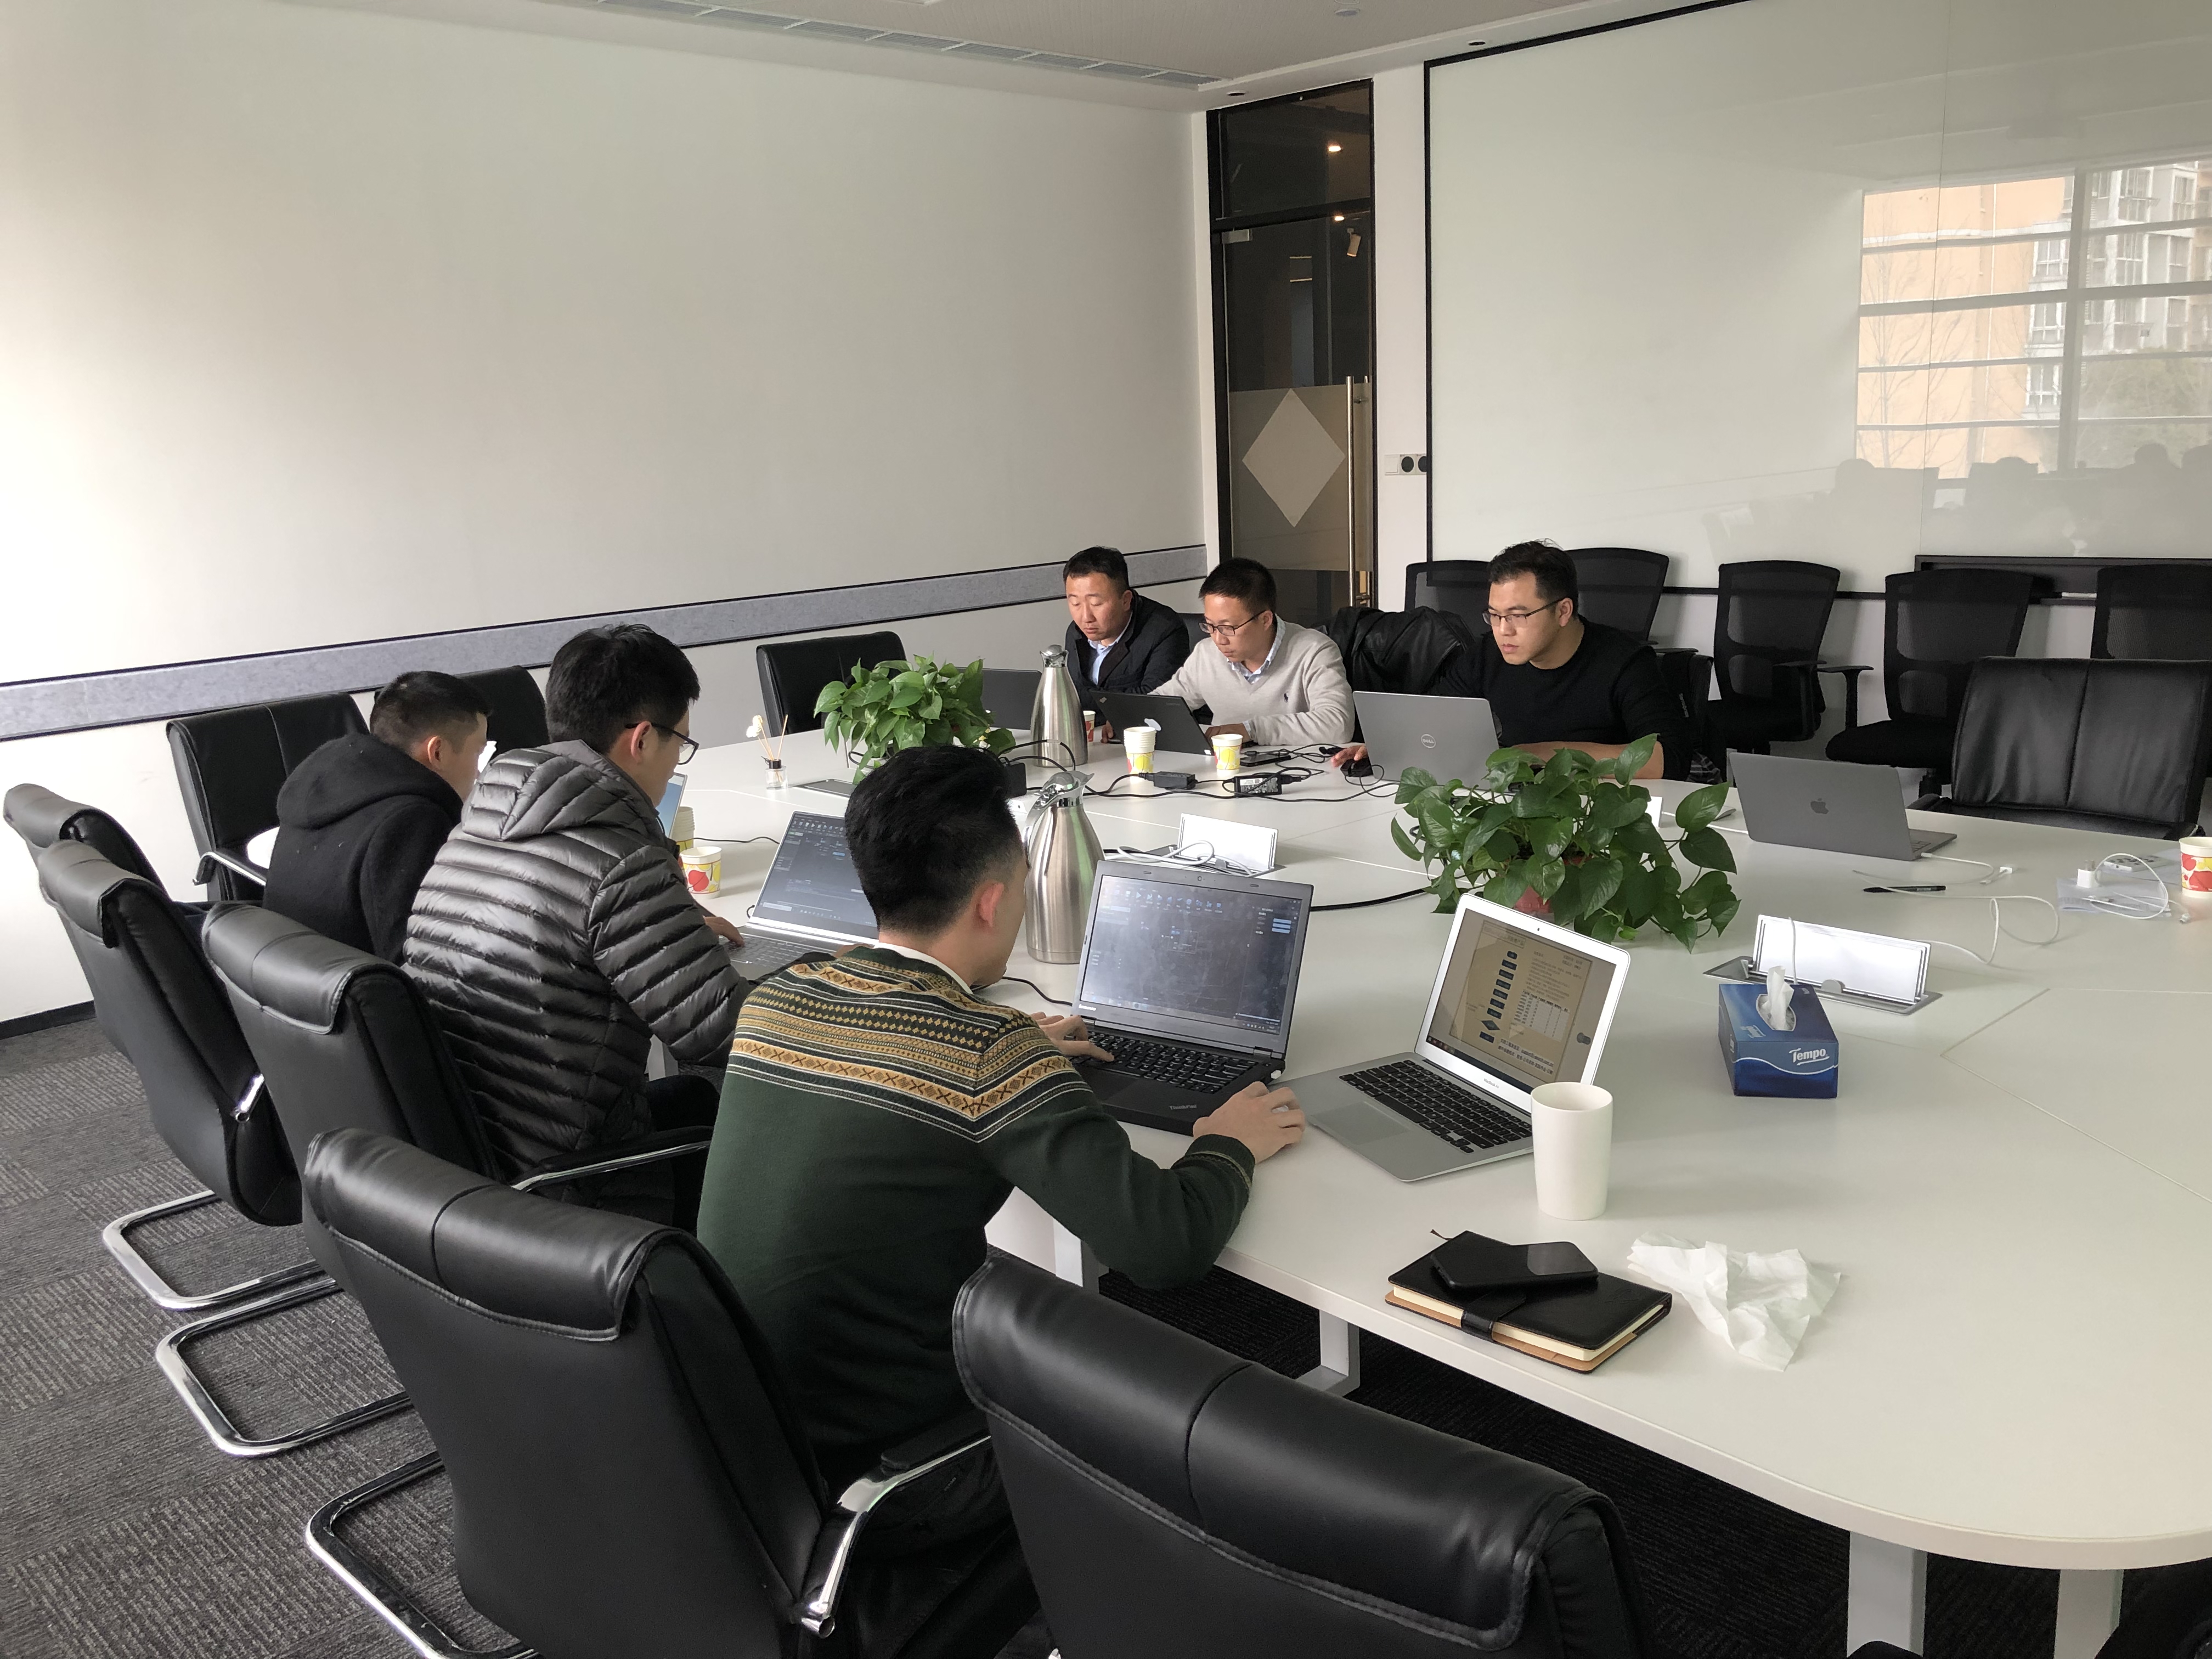 iS-RPA 技术认证培训 - 上海 20190322 班 - 培训完成